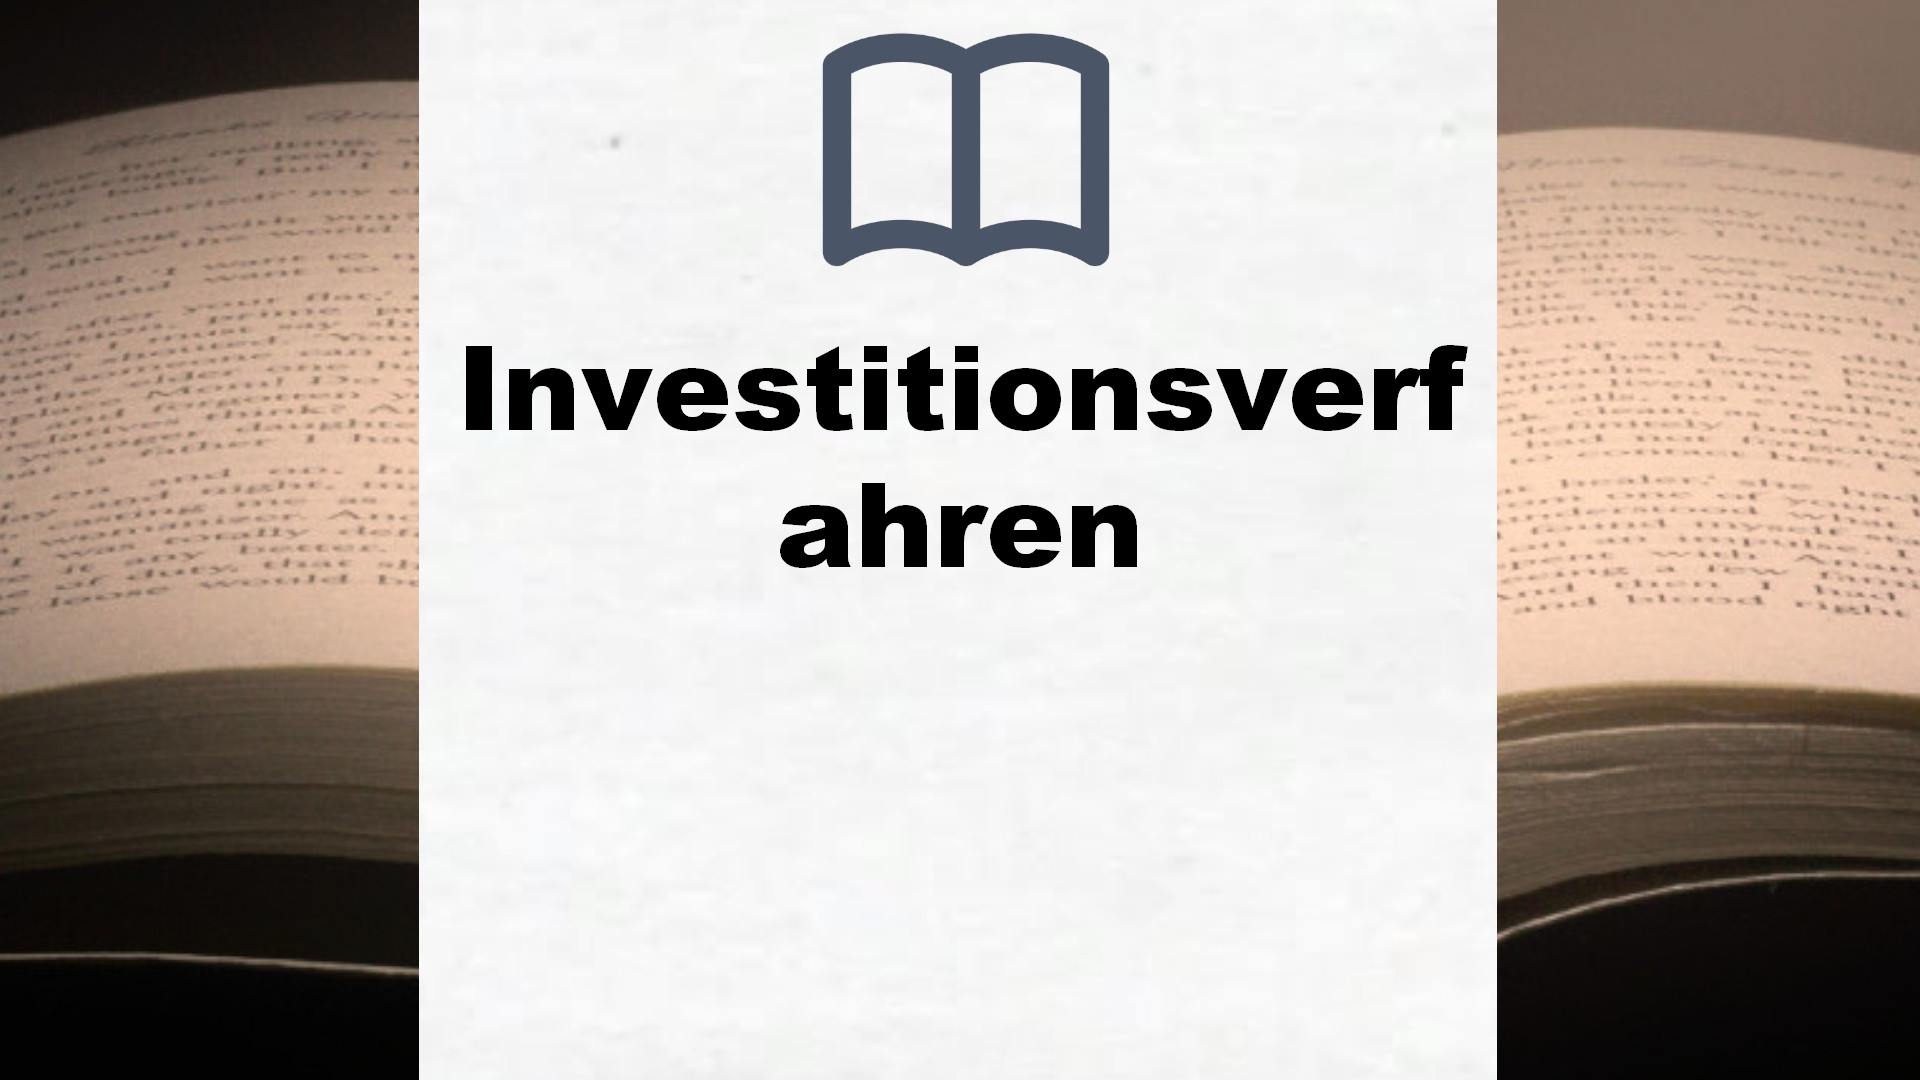 Bücher über Investitionsverfahren